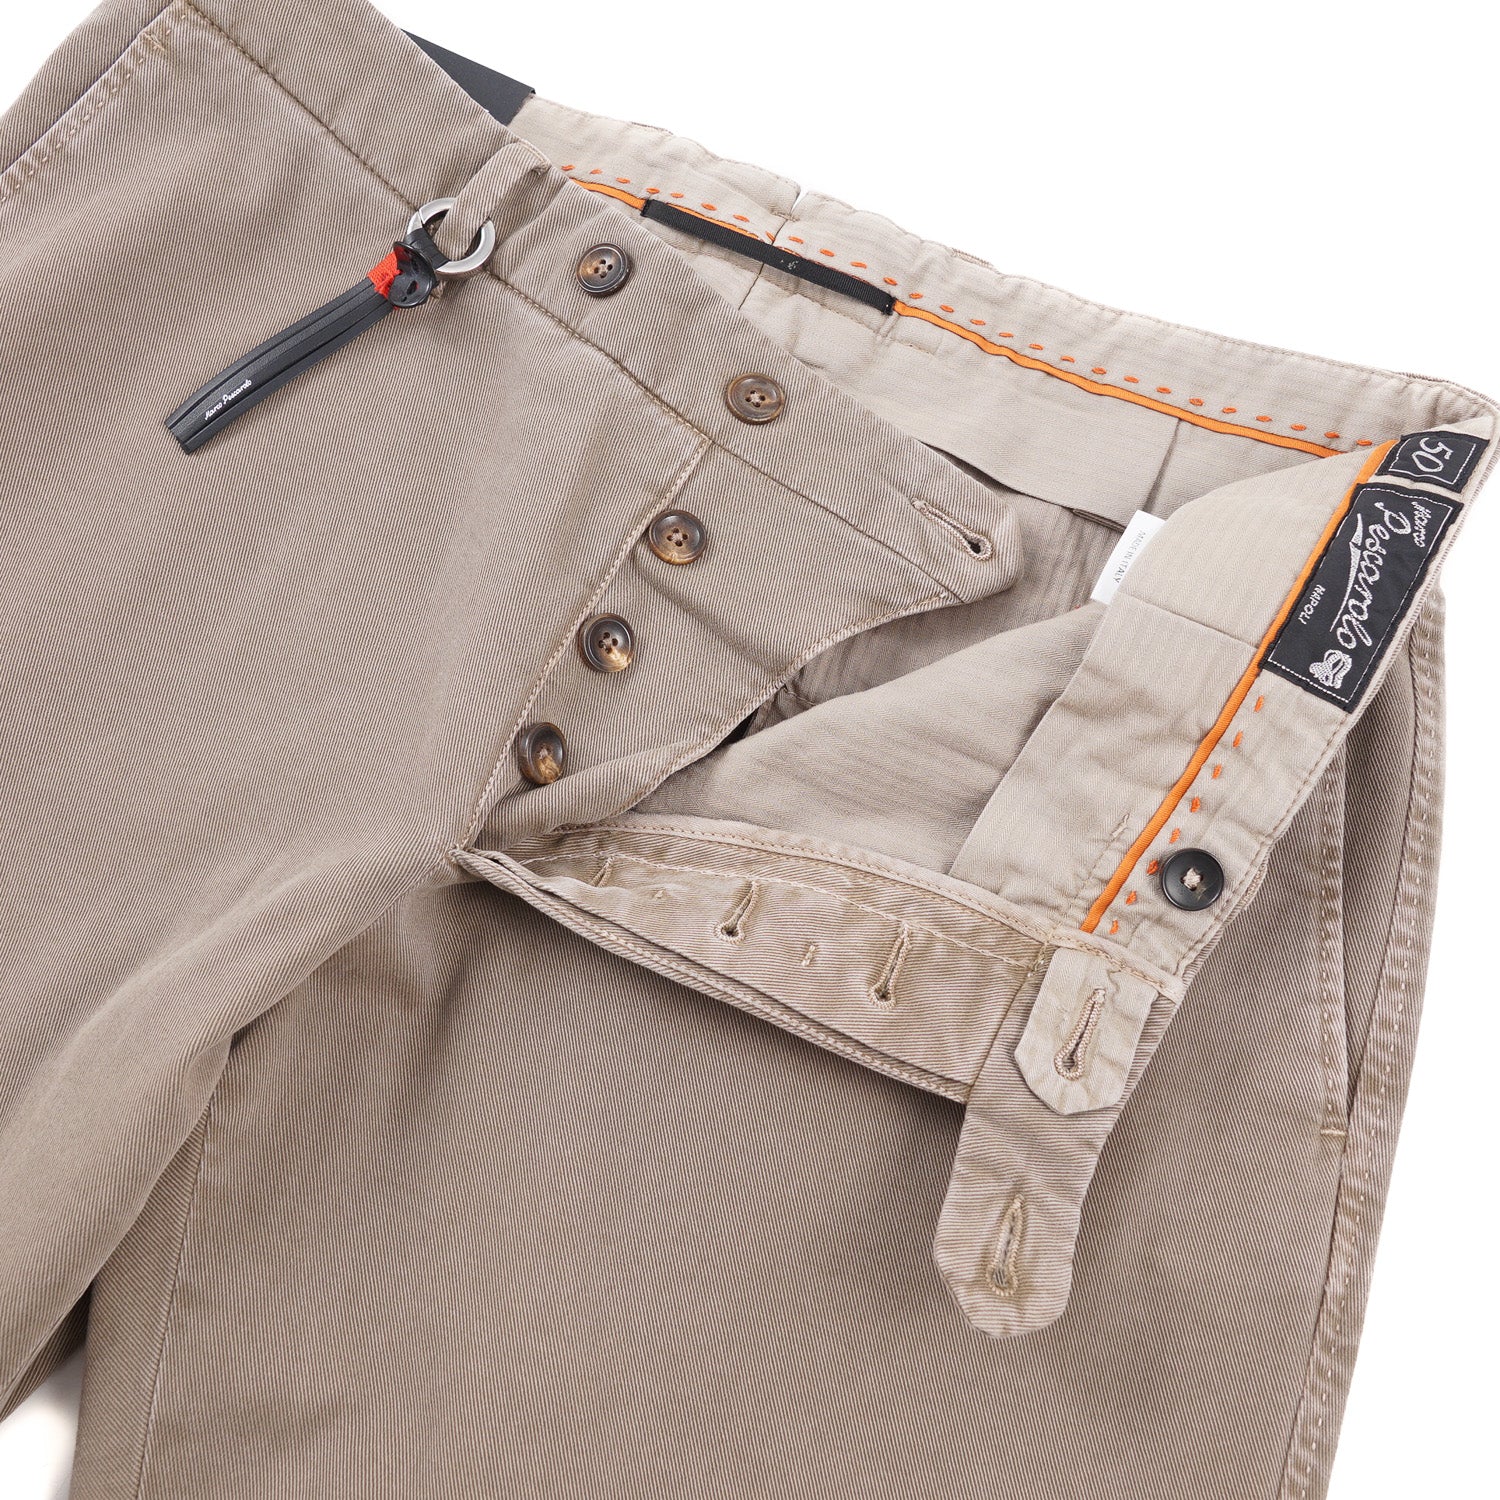 Marco Pescarolo Cotton-Cashmere Pants - Top Shelf Apparel